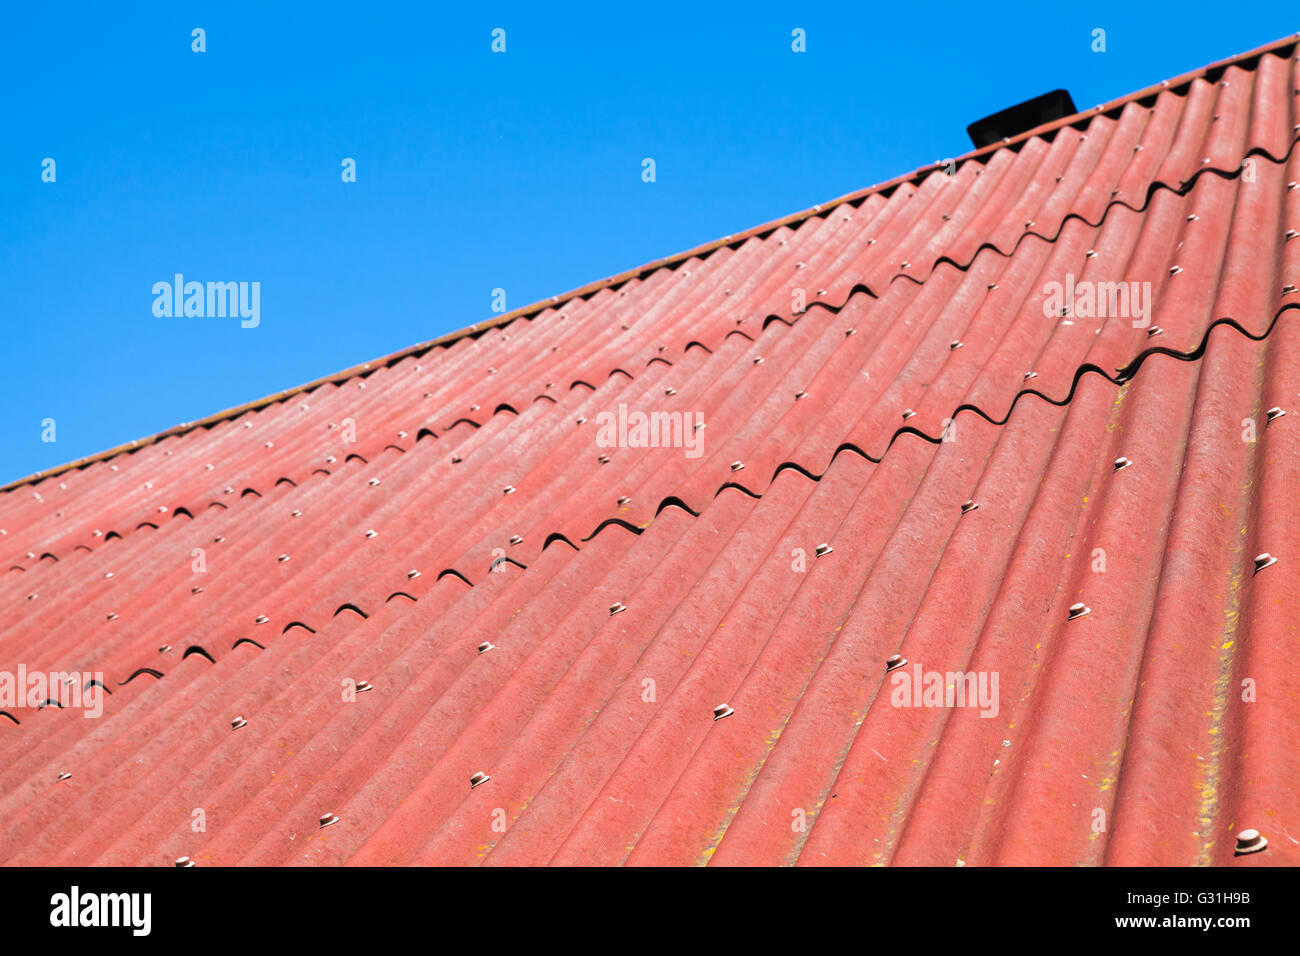 Cielo azul y rojo techo hecho de cartón corrugado bituminosos, fondo textura fotográfica Foto de stock